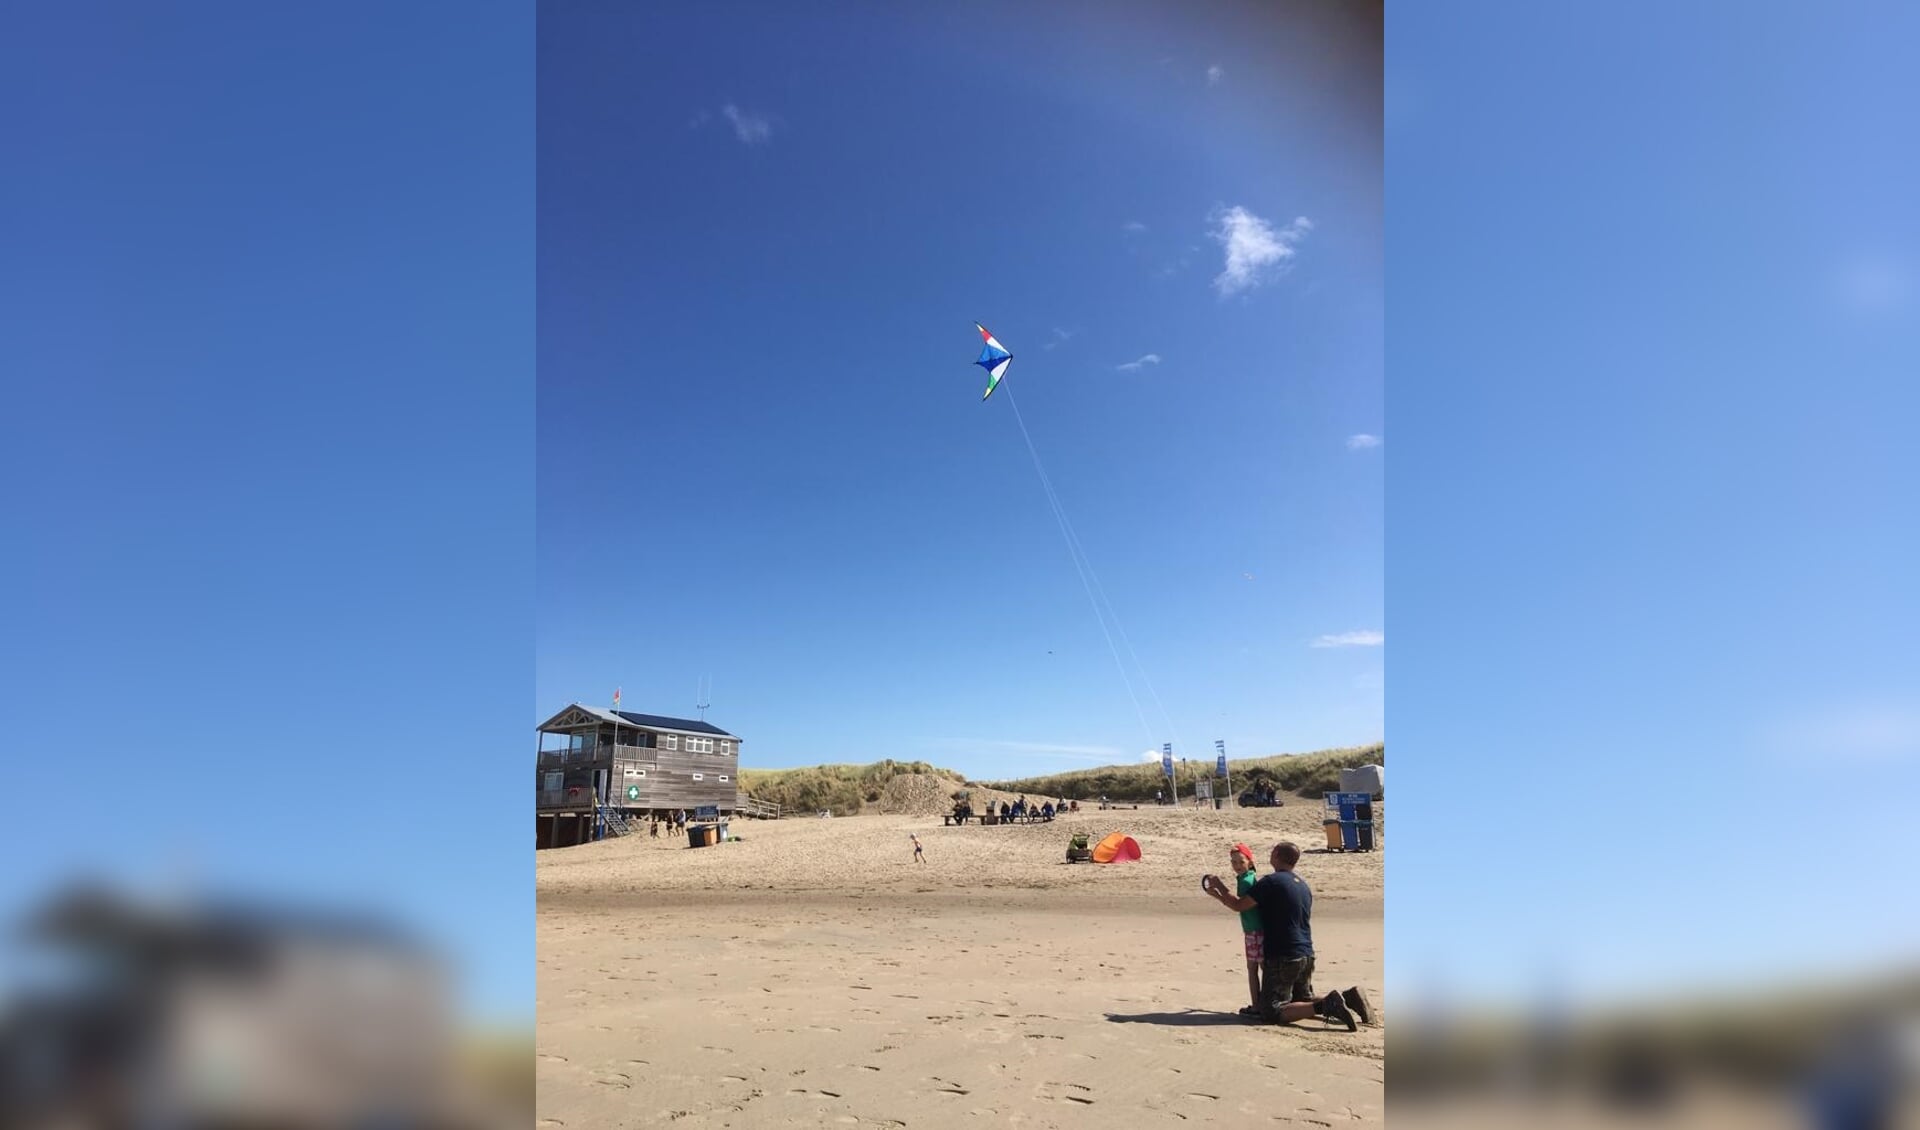 Koen leert vliegeren van papa Maarten op het strand van Julianadorp, Noord Holland